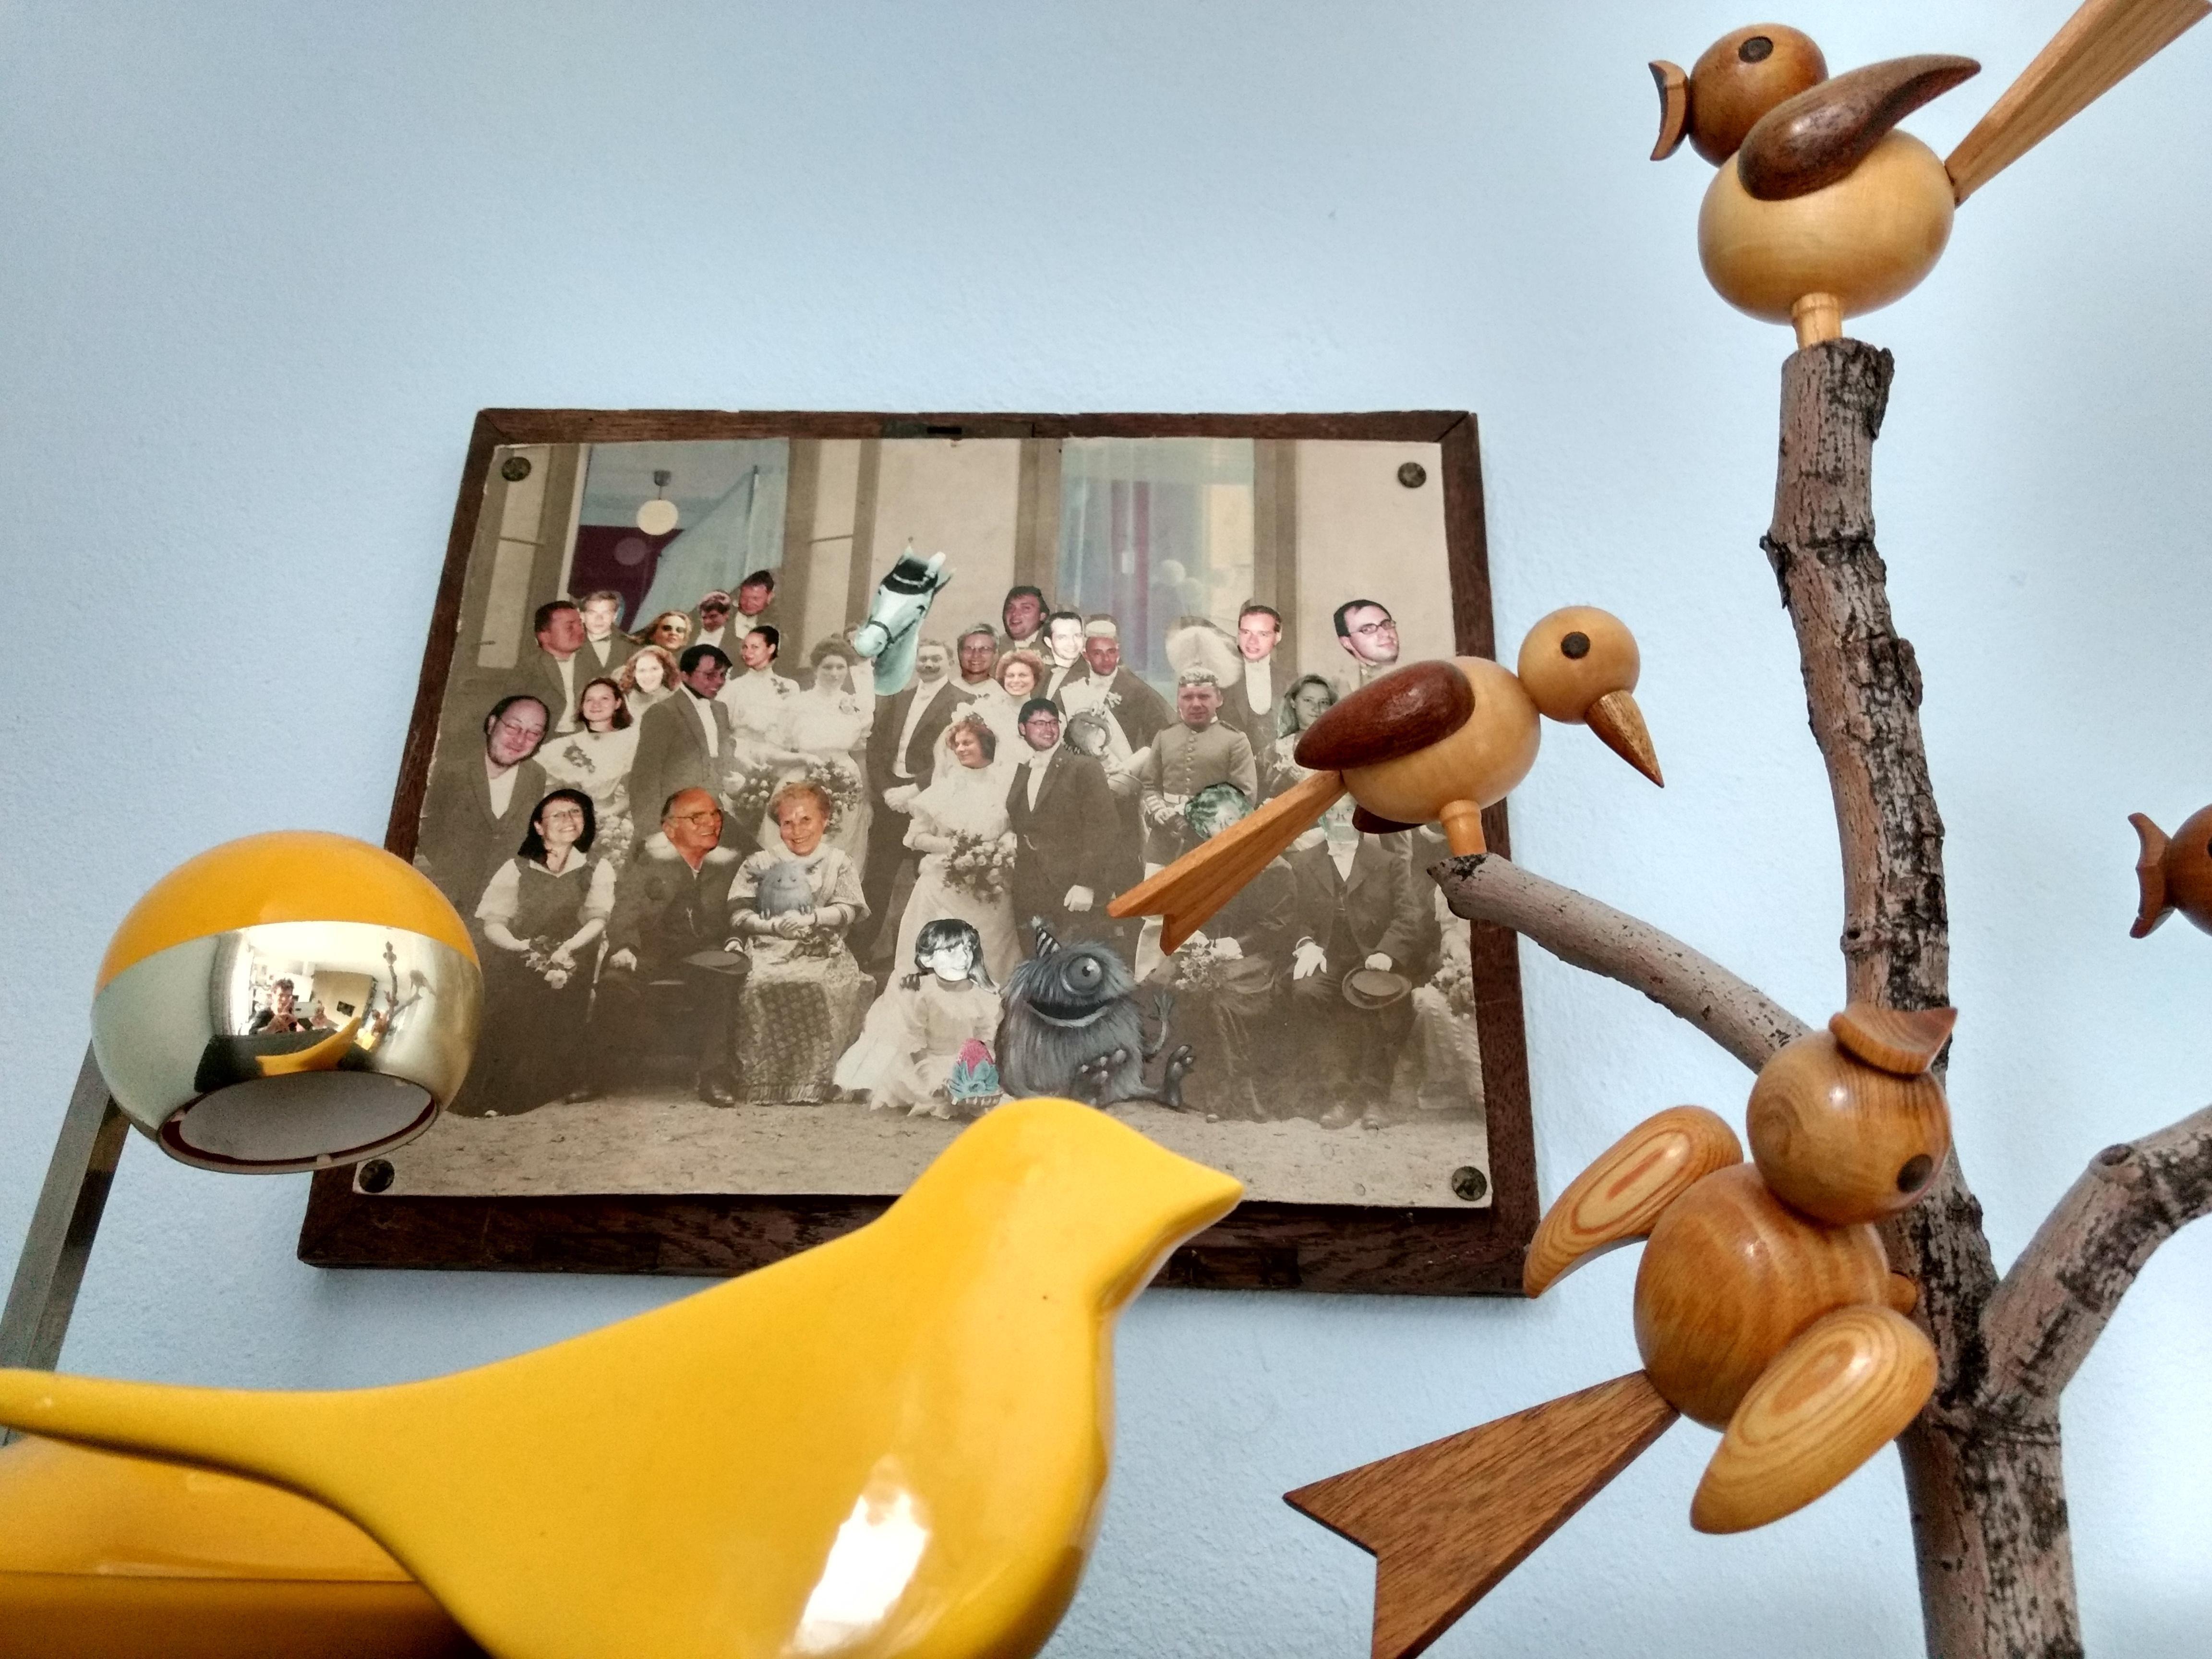 #vögel vor dem #hochzeitsbild #vintage #yellow #seventies
#holzdeko